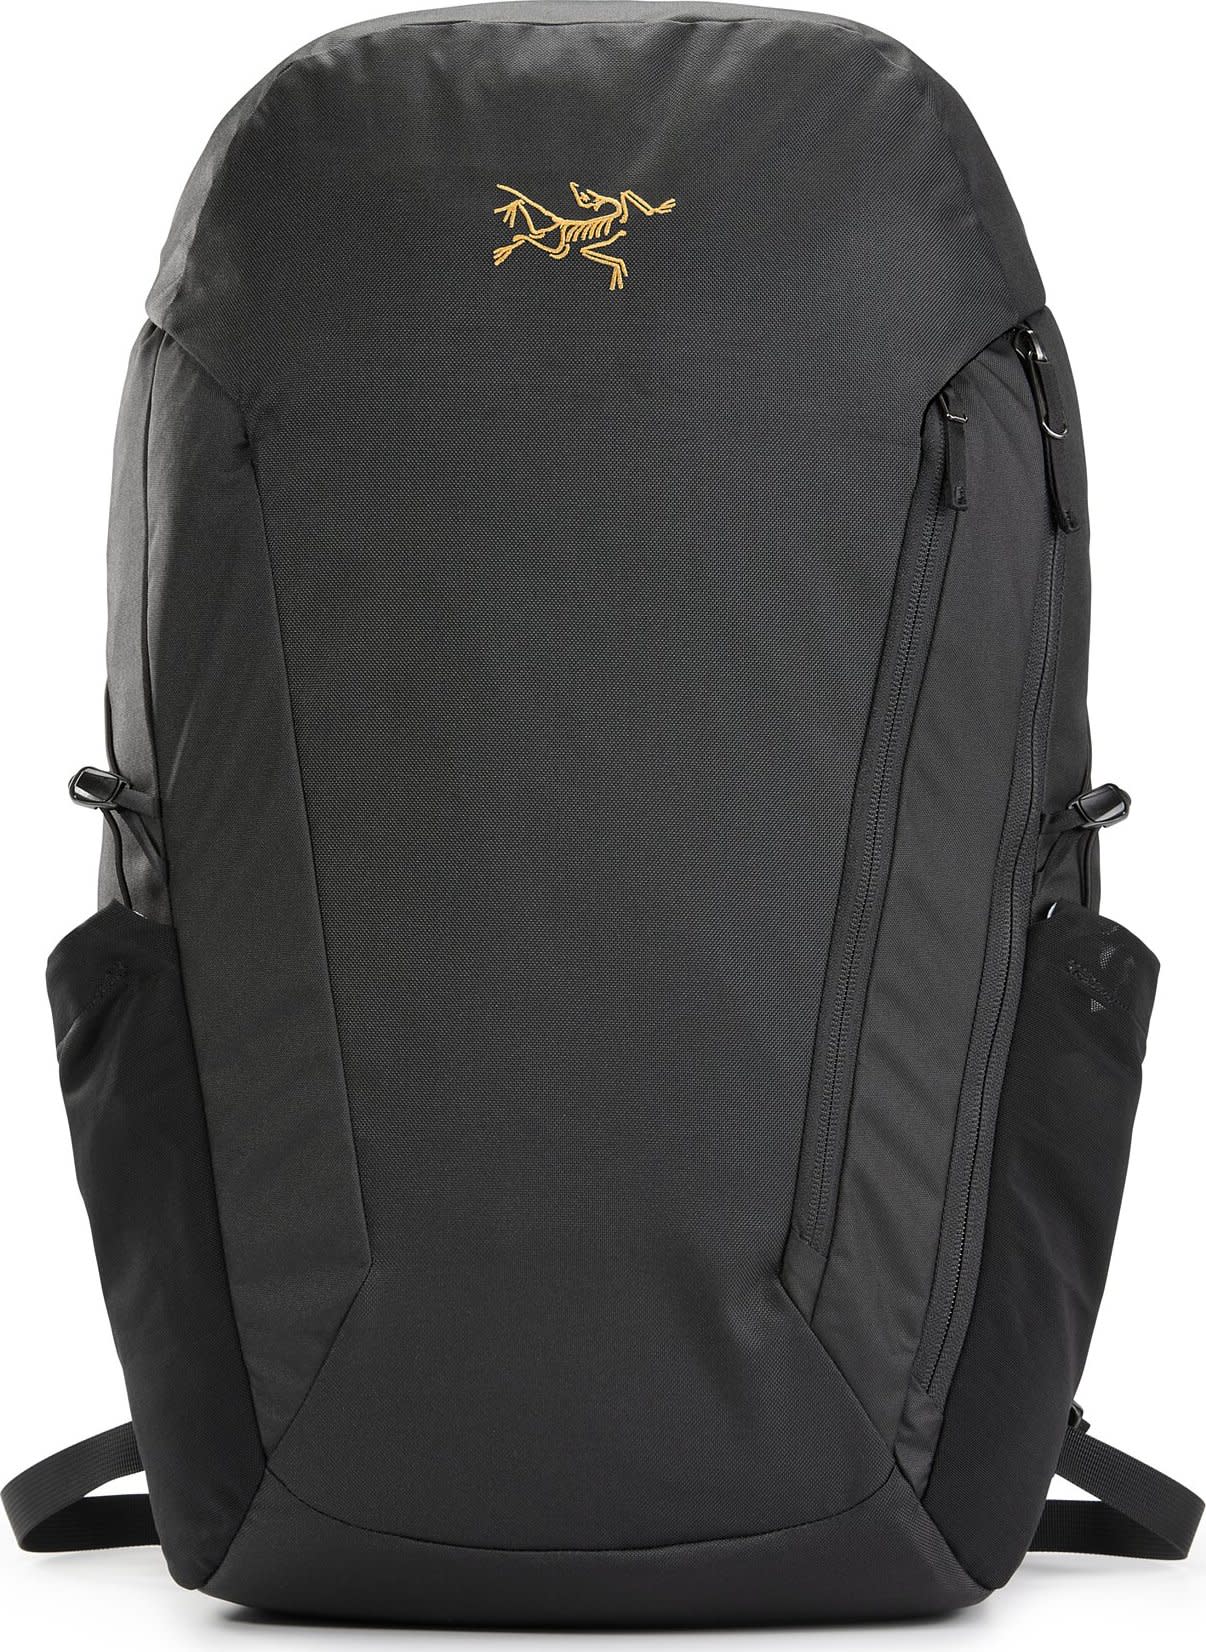 Mantis 30 Backpack Black